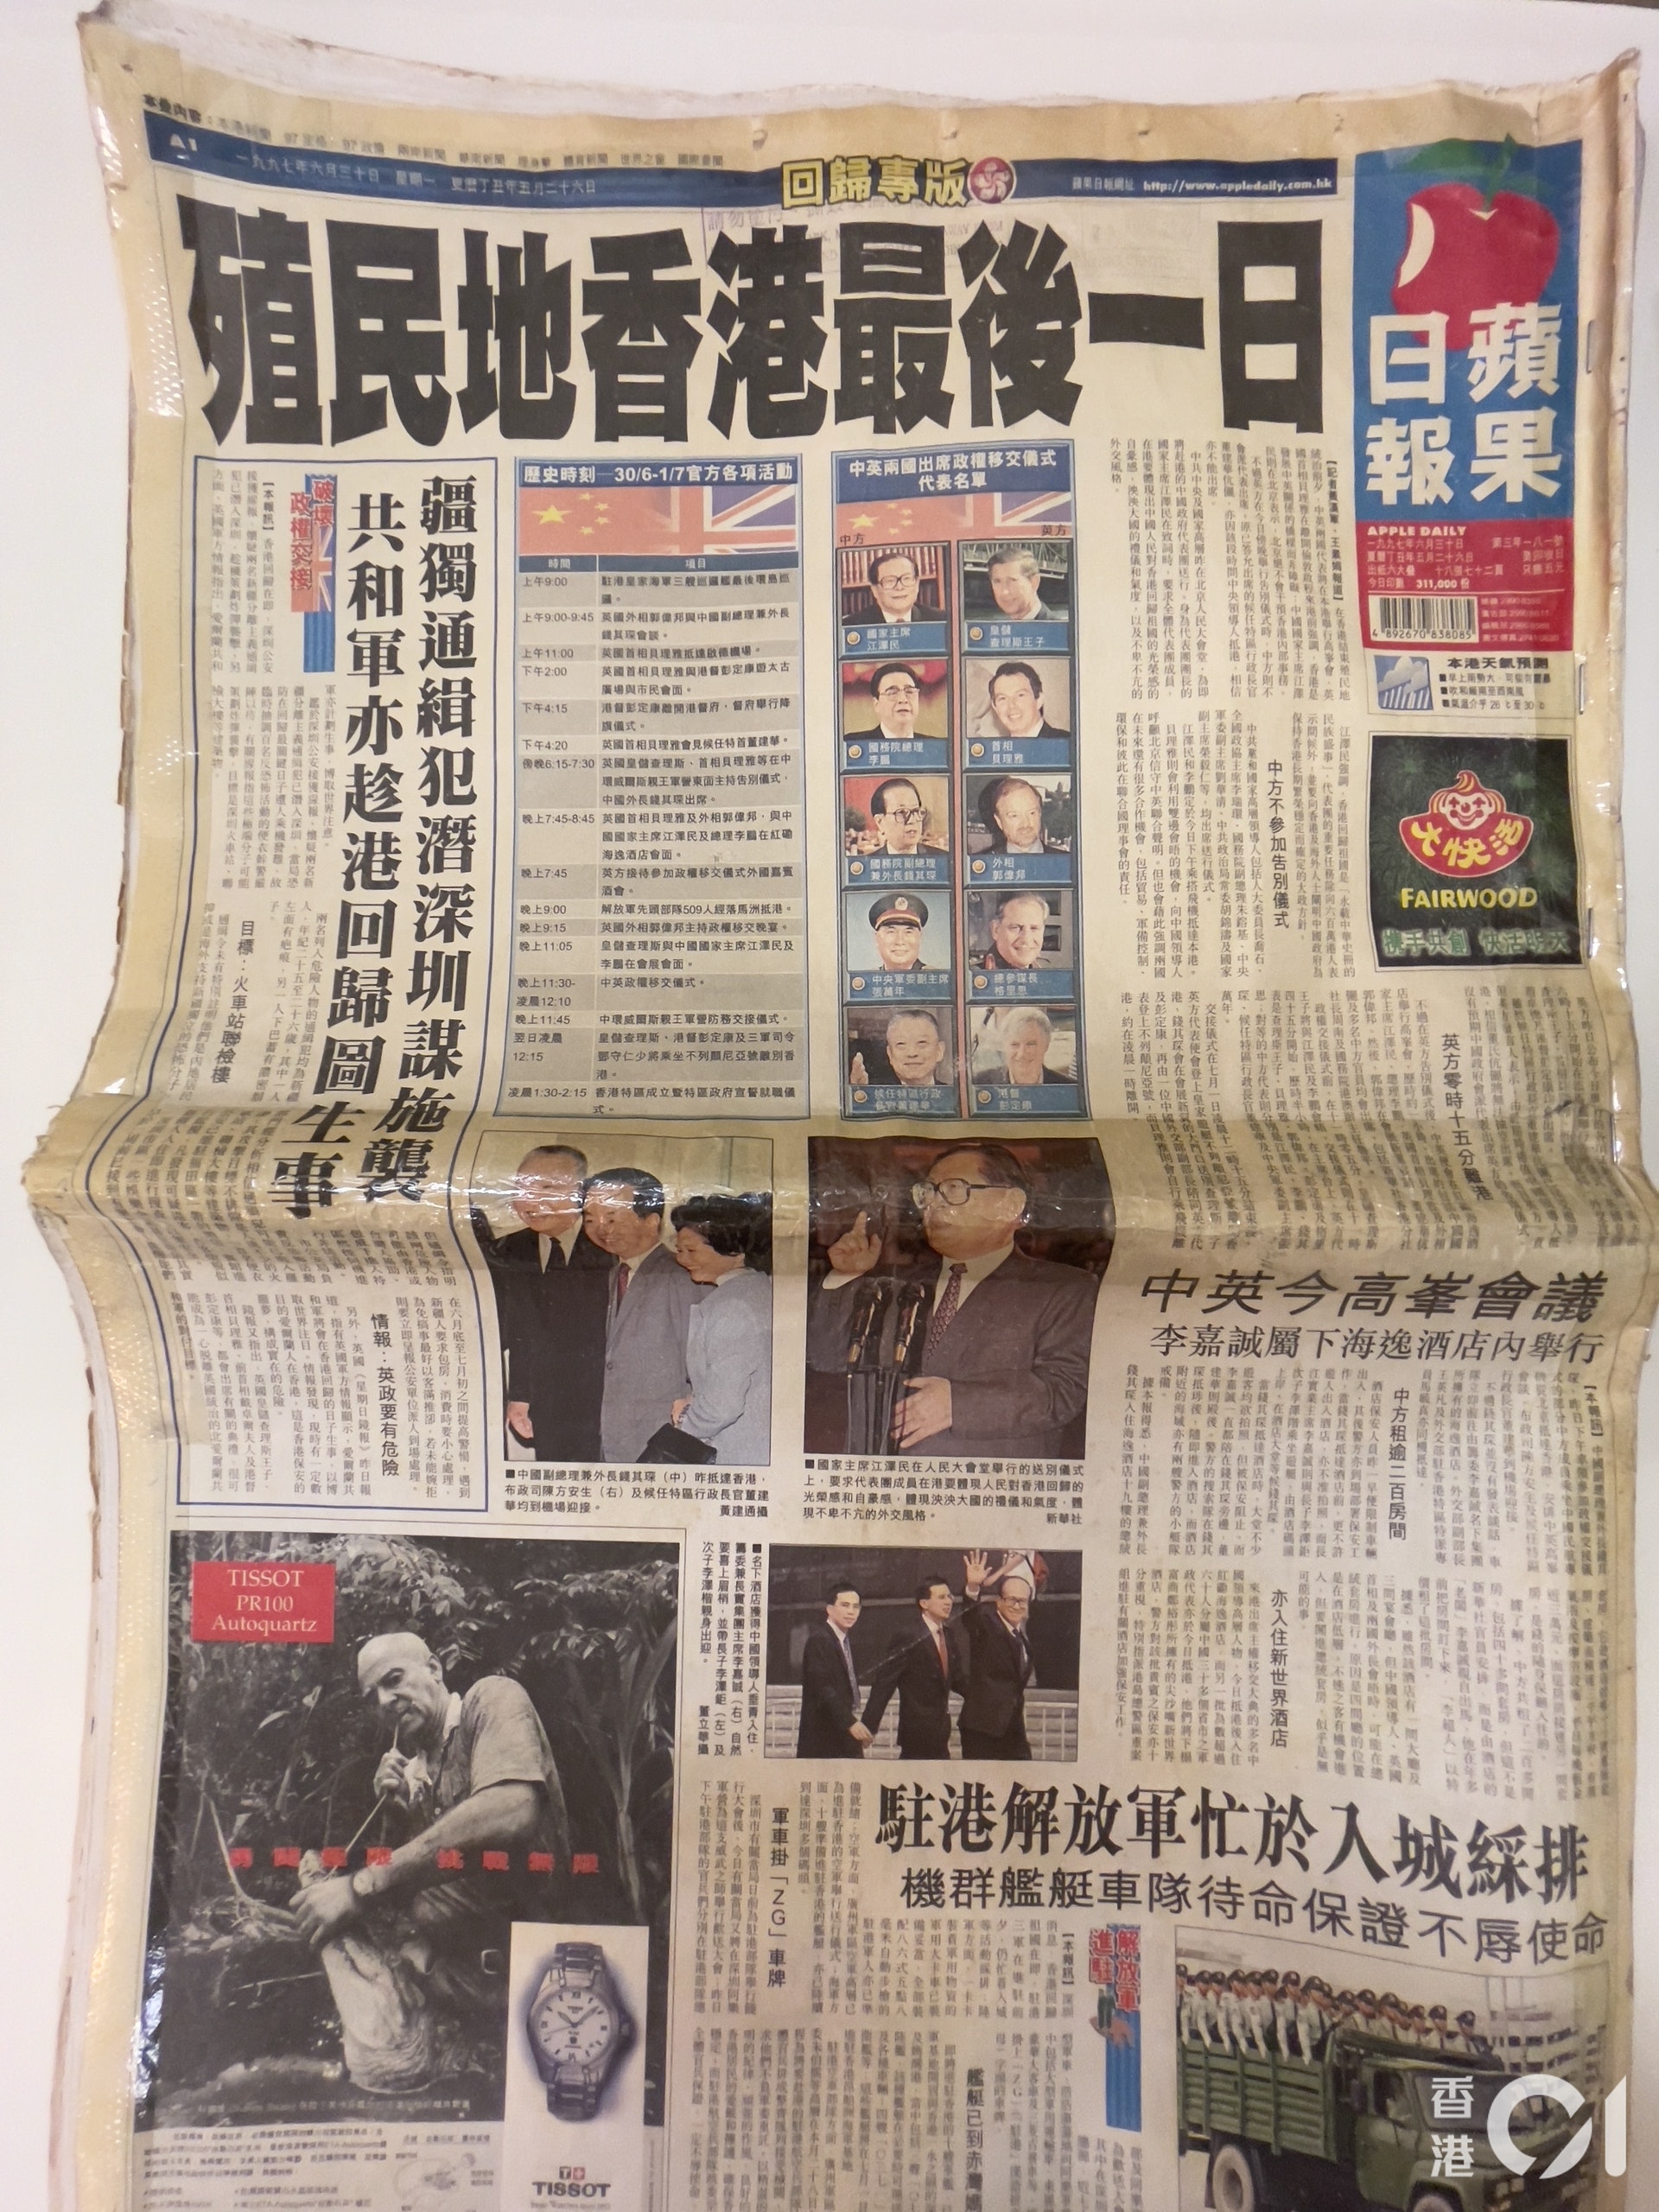 1997年6月30日，即回歸的前一天，《蘋果日報》的頭版標題是「殖民地香港最後一日」。（盧翊銘攝）